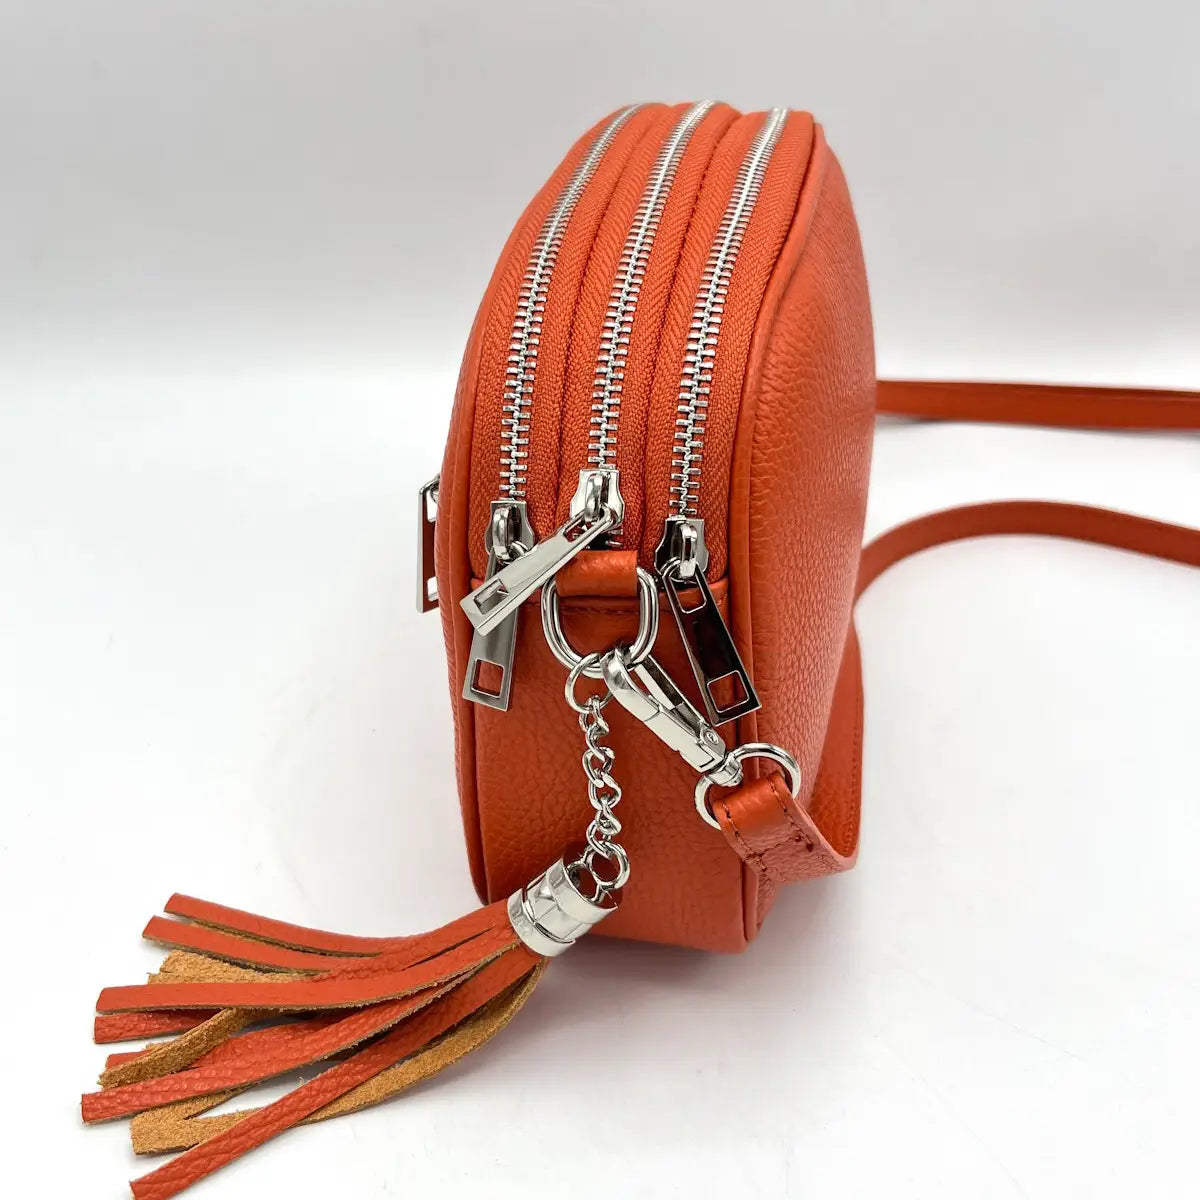 Suie Valentini srl 112416 Orange Genuine Leather Shoulder Bag